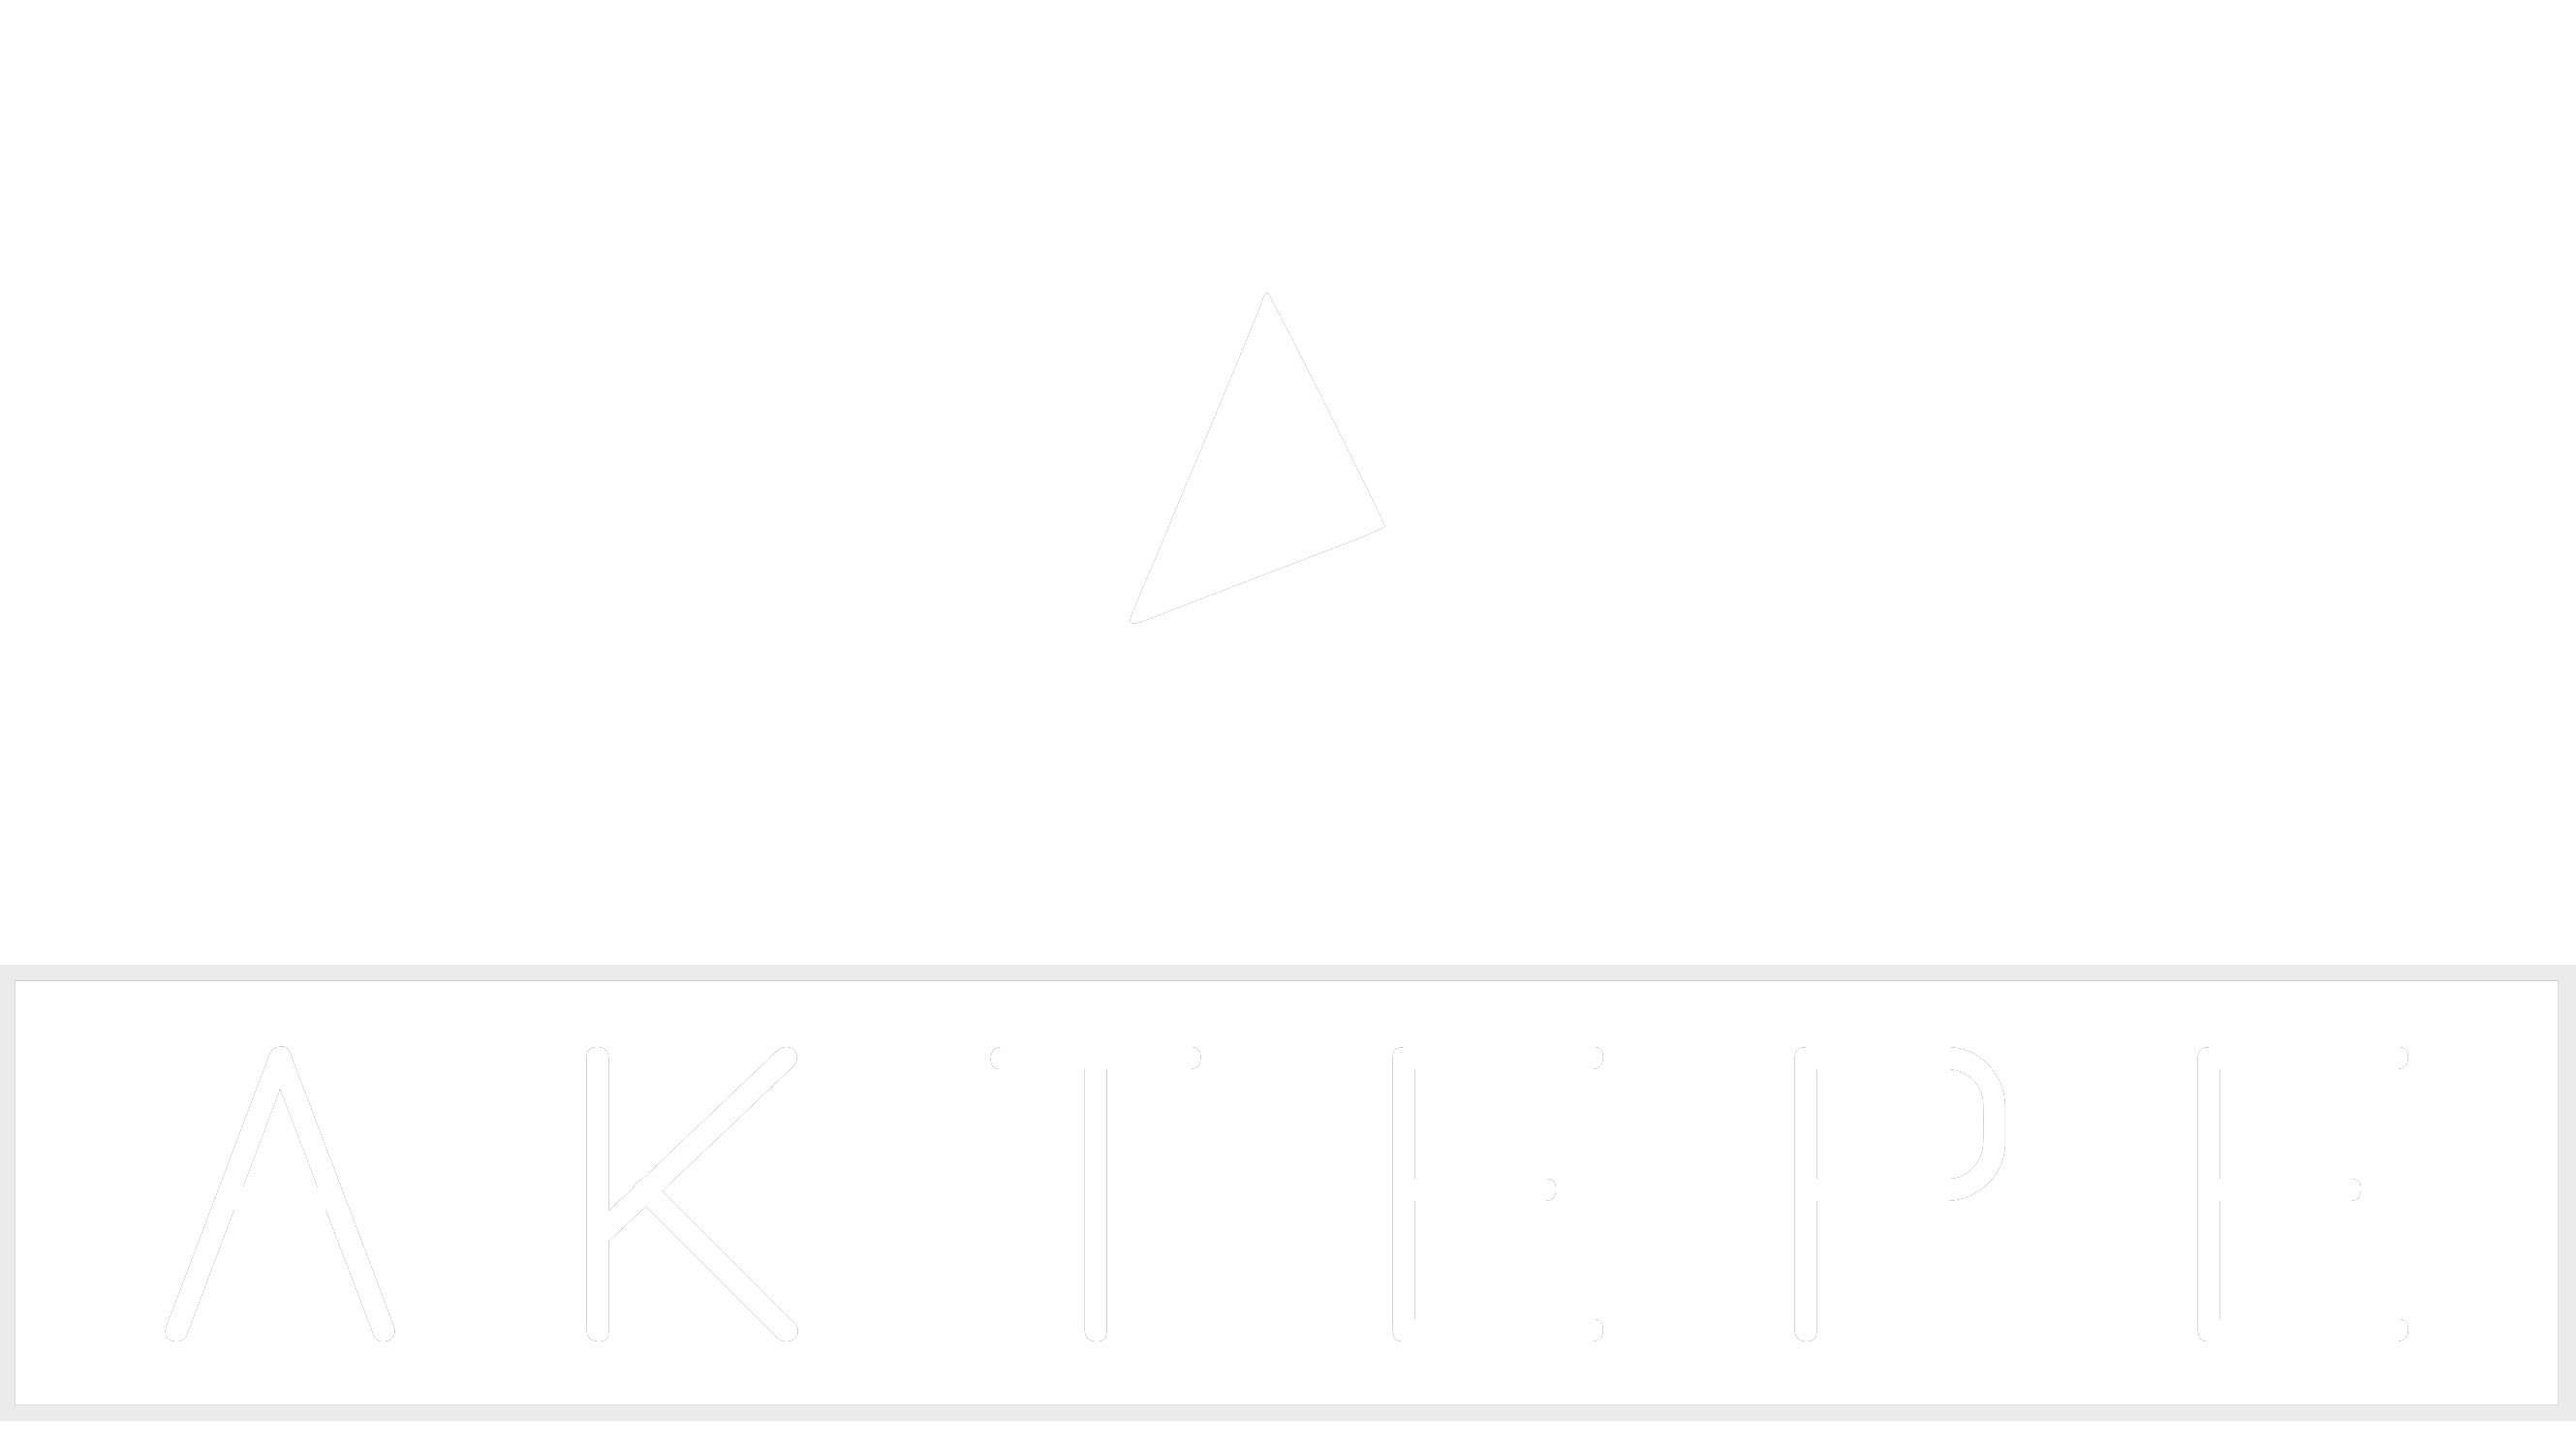 RANGER - Aktepe Shop - Oto Müzik Görüntü Navigasyon Sistemleri ve Teyp Çerçevesi Satış Merkezi